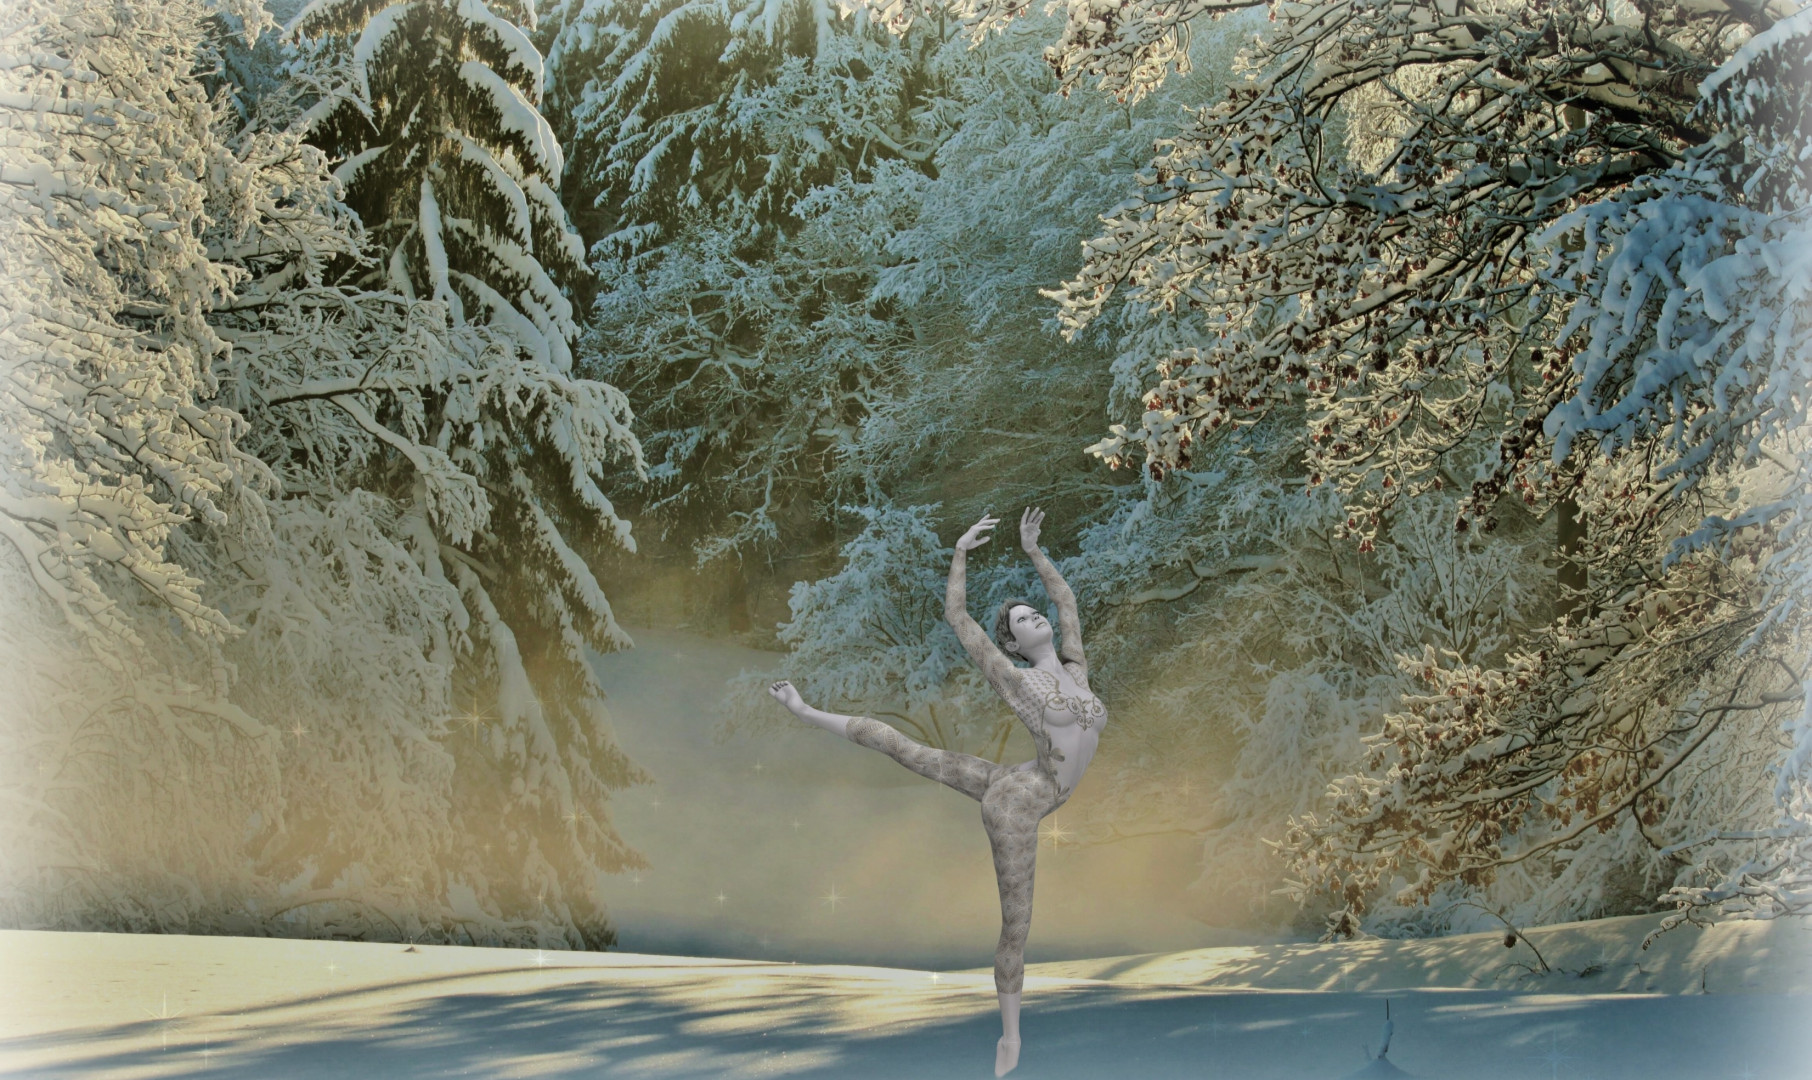 Tańcząca kobieta wokół ośnieżonych drzew